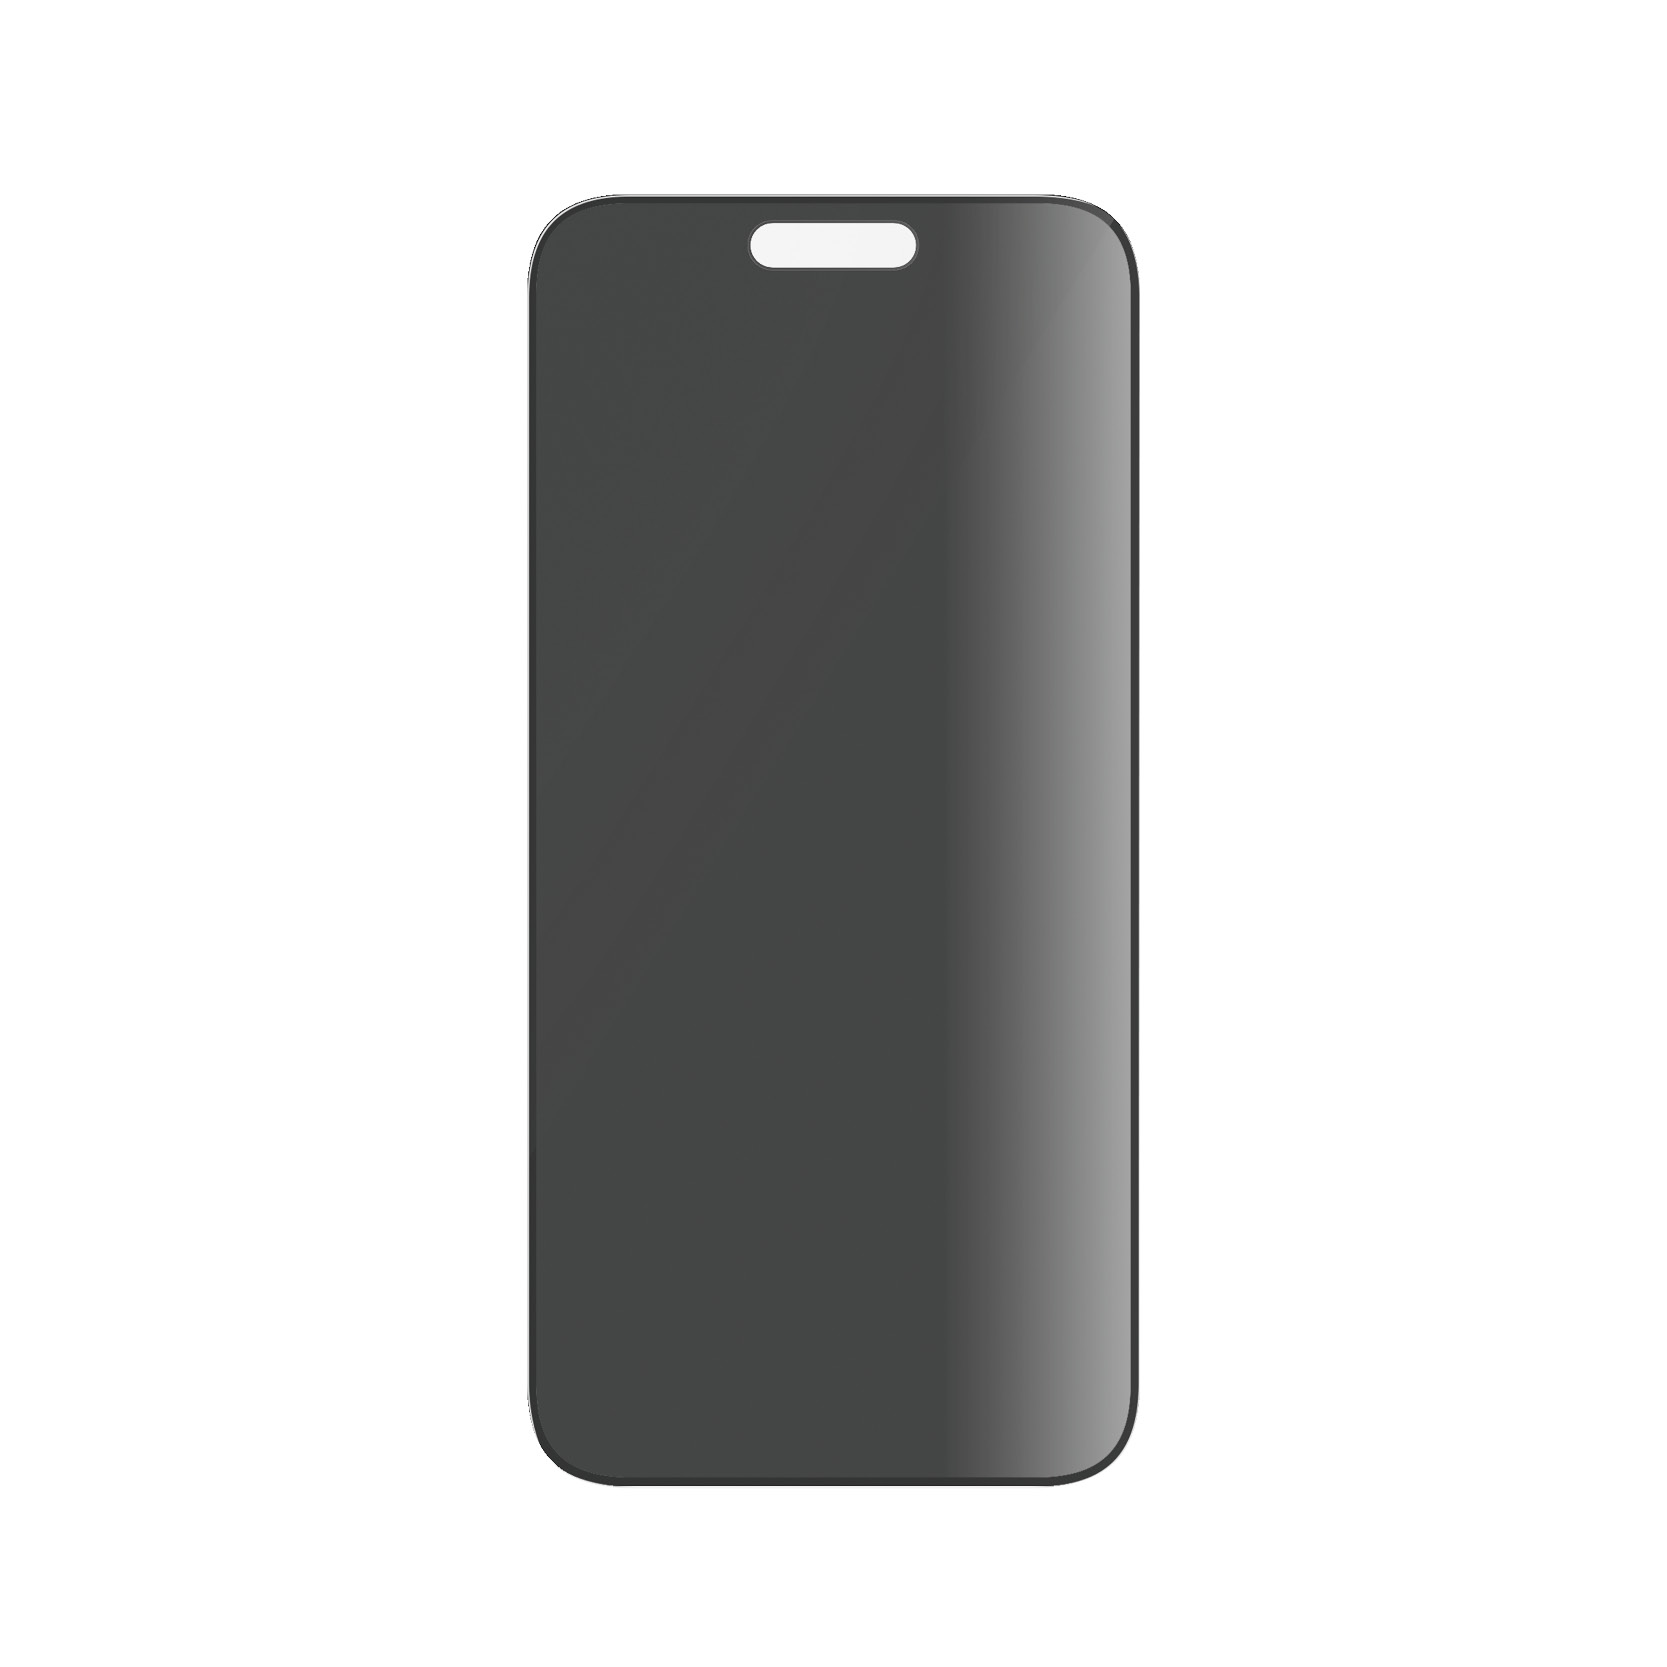 PANZER GLASS Ultra-Wide Fit iPhone 15 Plus kijelzővédő üvegfólia - Betekintés gátló